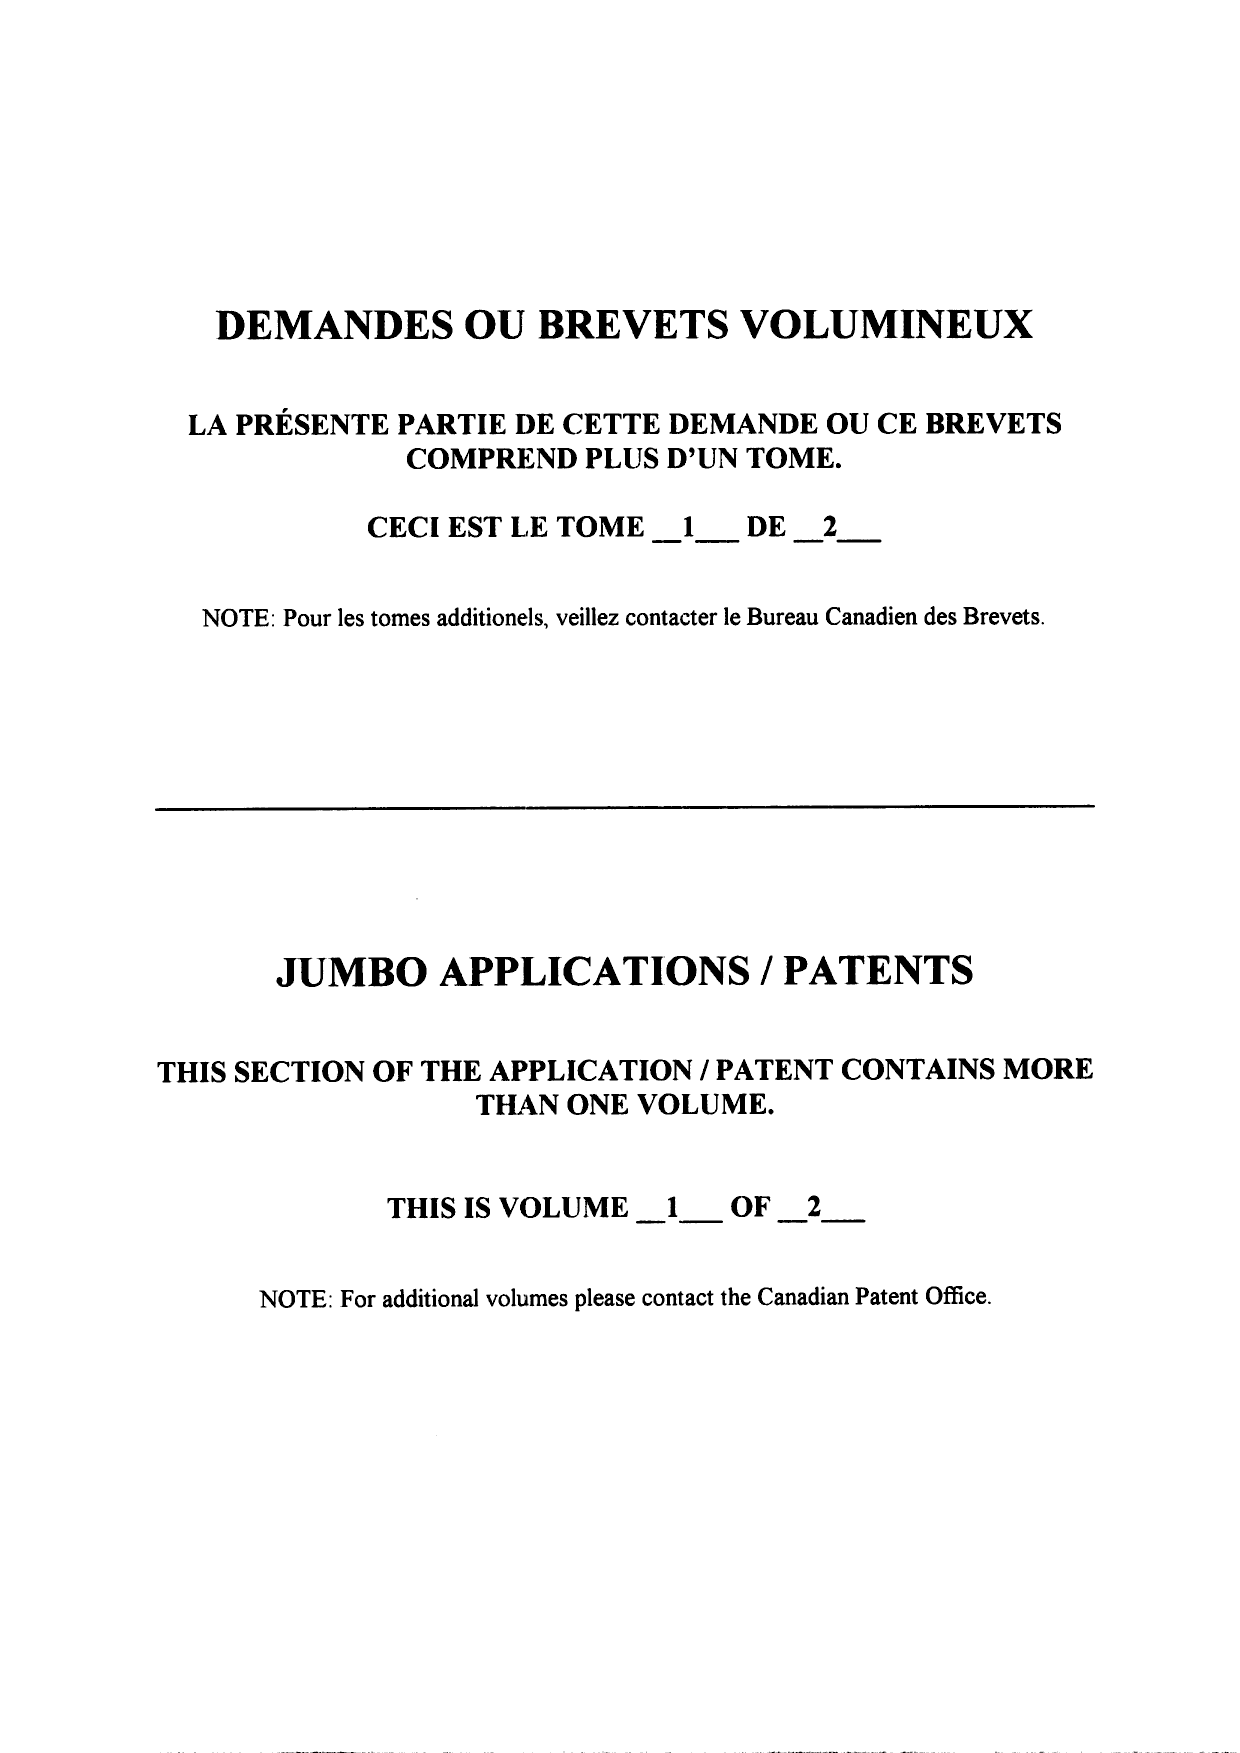 Canadian Patent Document 2324226. Description 20100416. Image 250 of 250